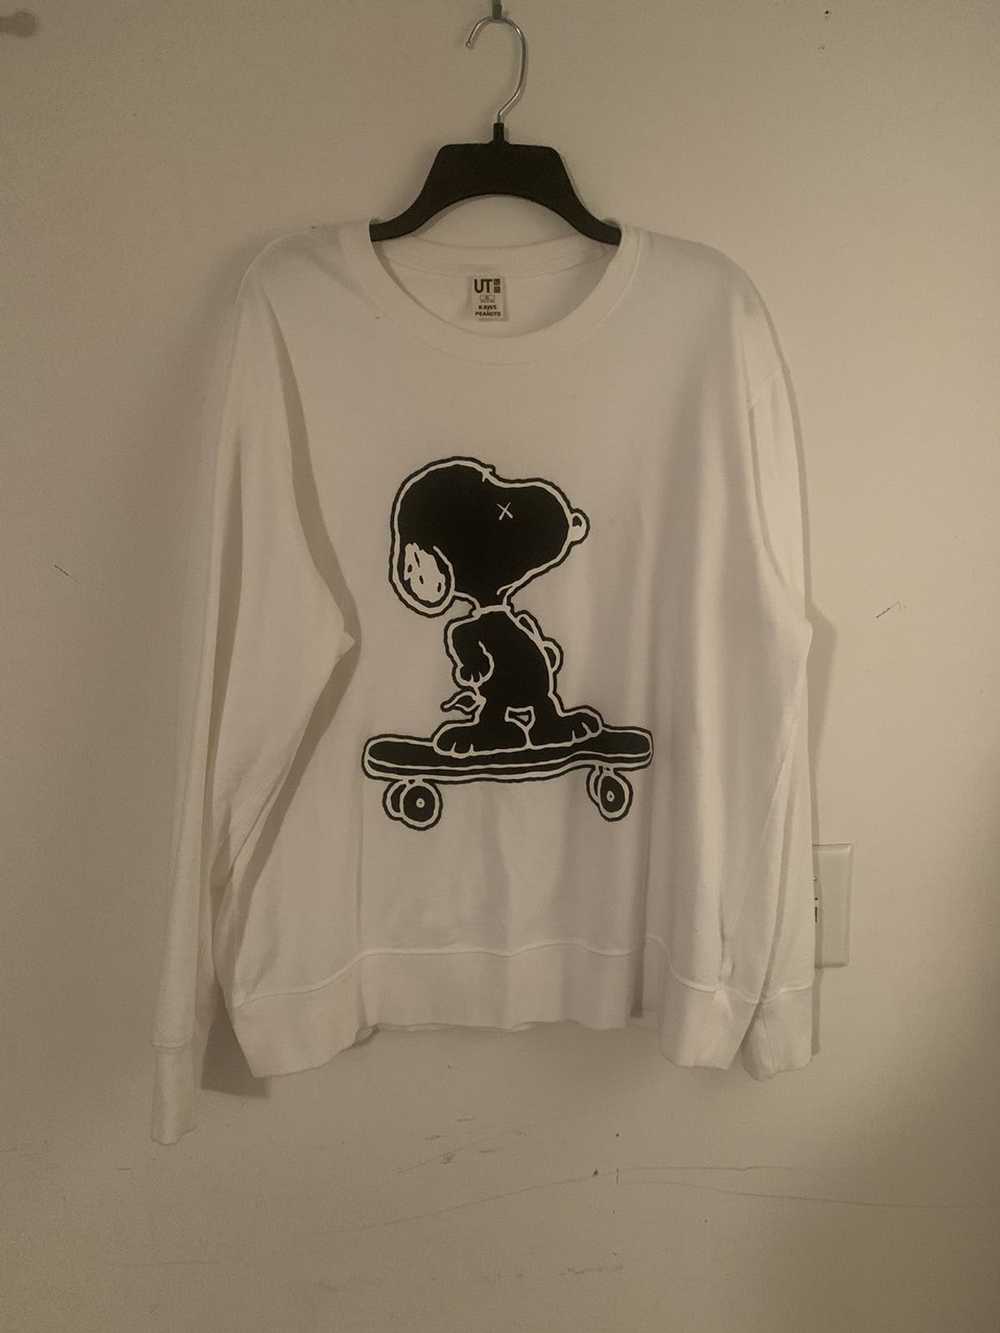 Kaws × Peanuts Kaws x Peanuts Snoopy Sweatshirt XL - image 1